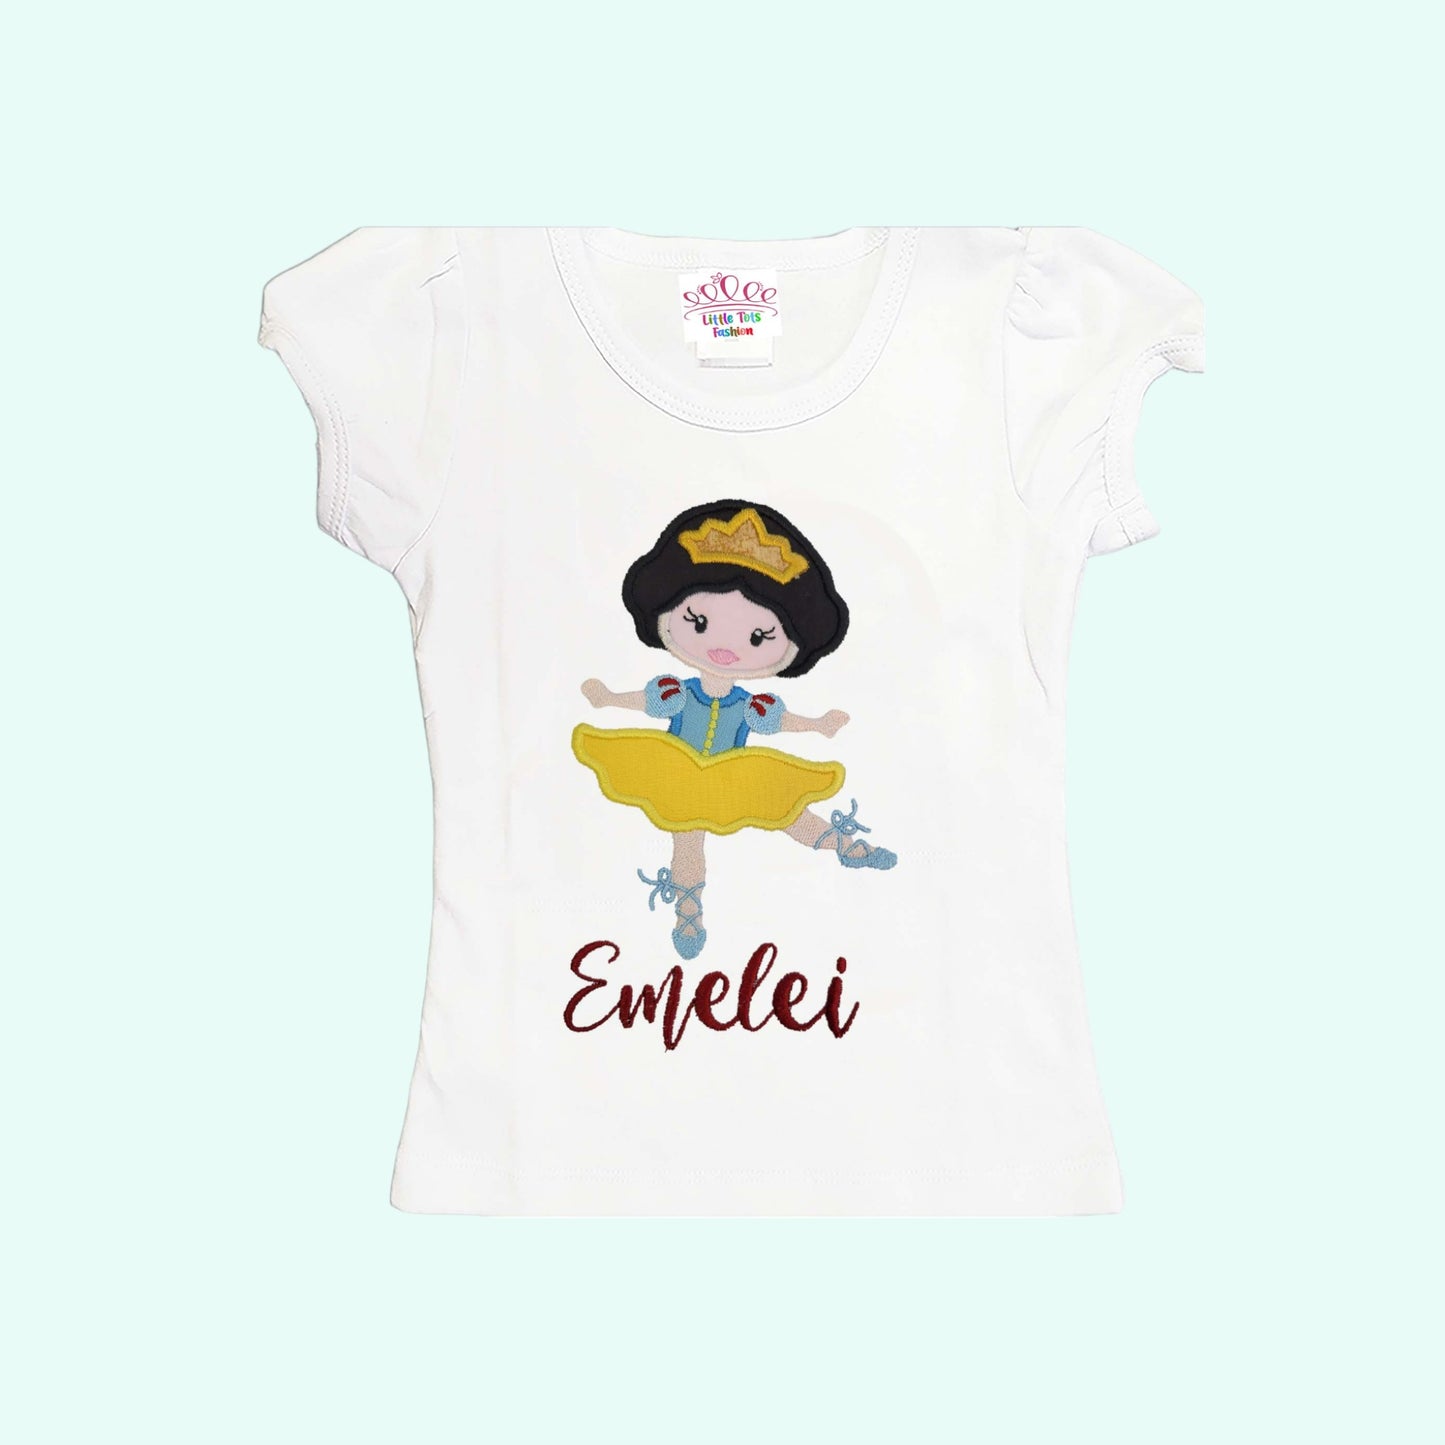 Ballerina Birthday Shirt, Personalized shirt, Girls Ballerina Shirt, Snow White inspire girls shirt